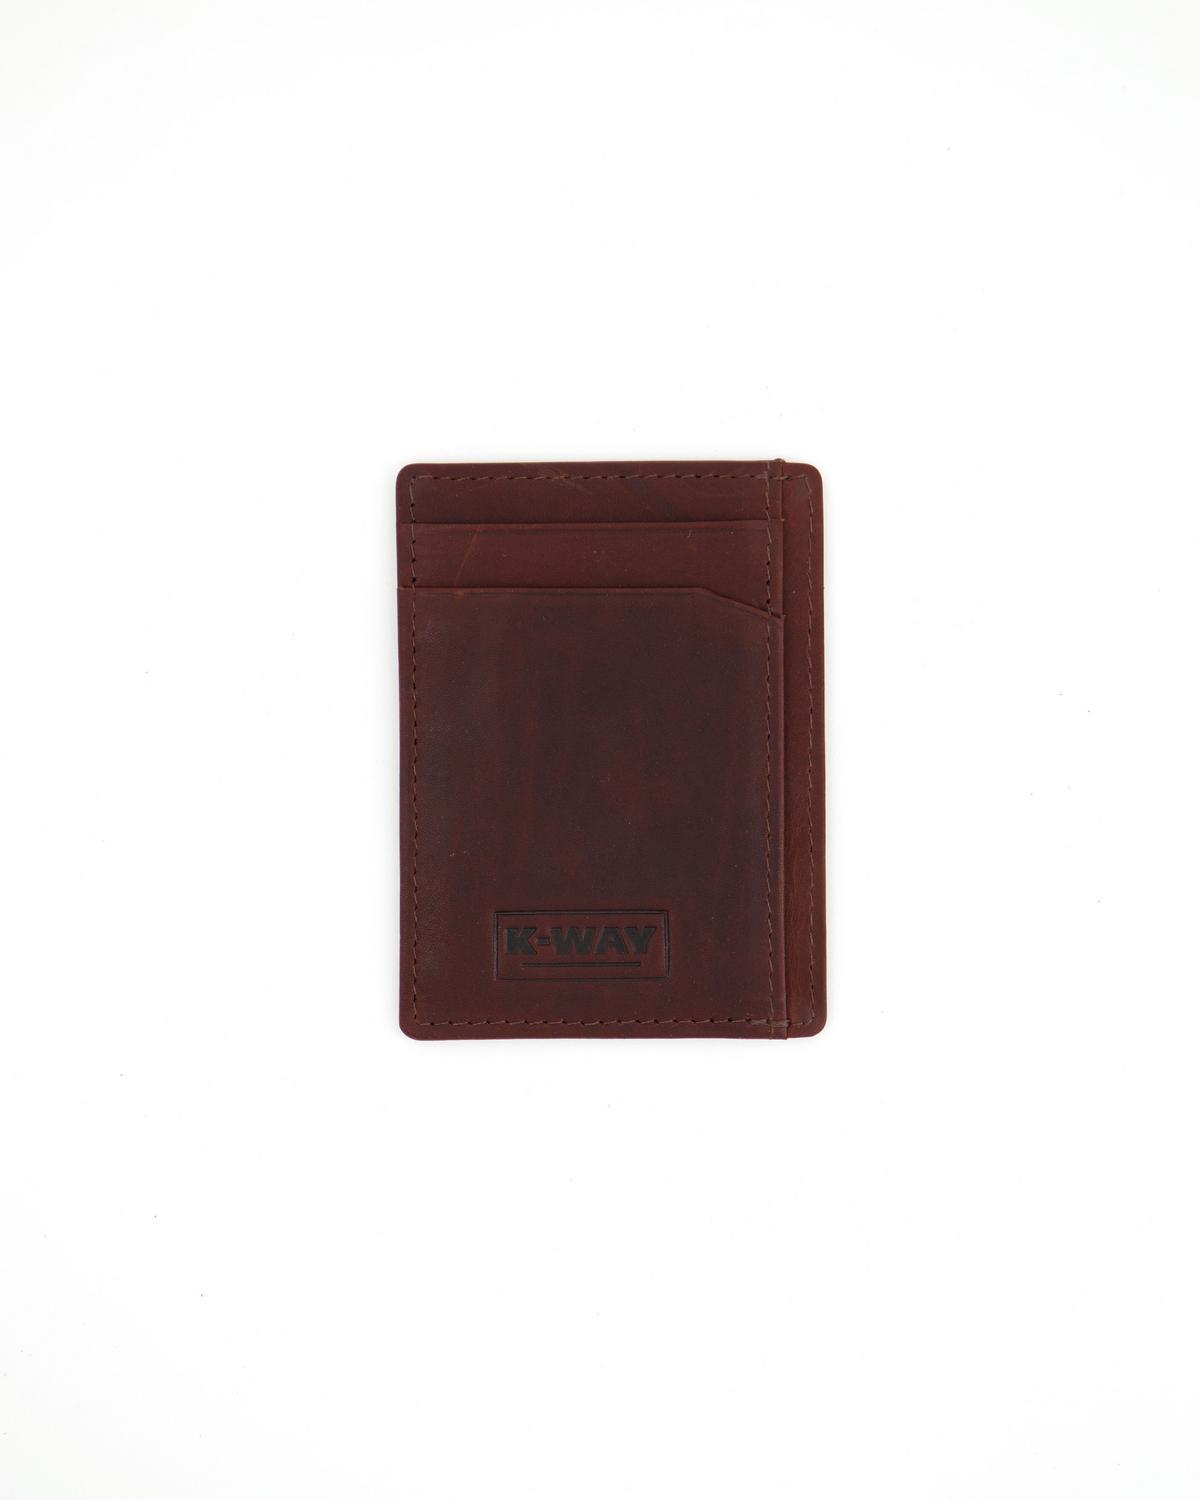 K-Way Elements Men’s Lagos Wallet -  Chocolate